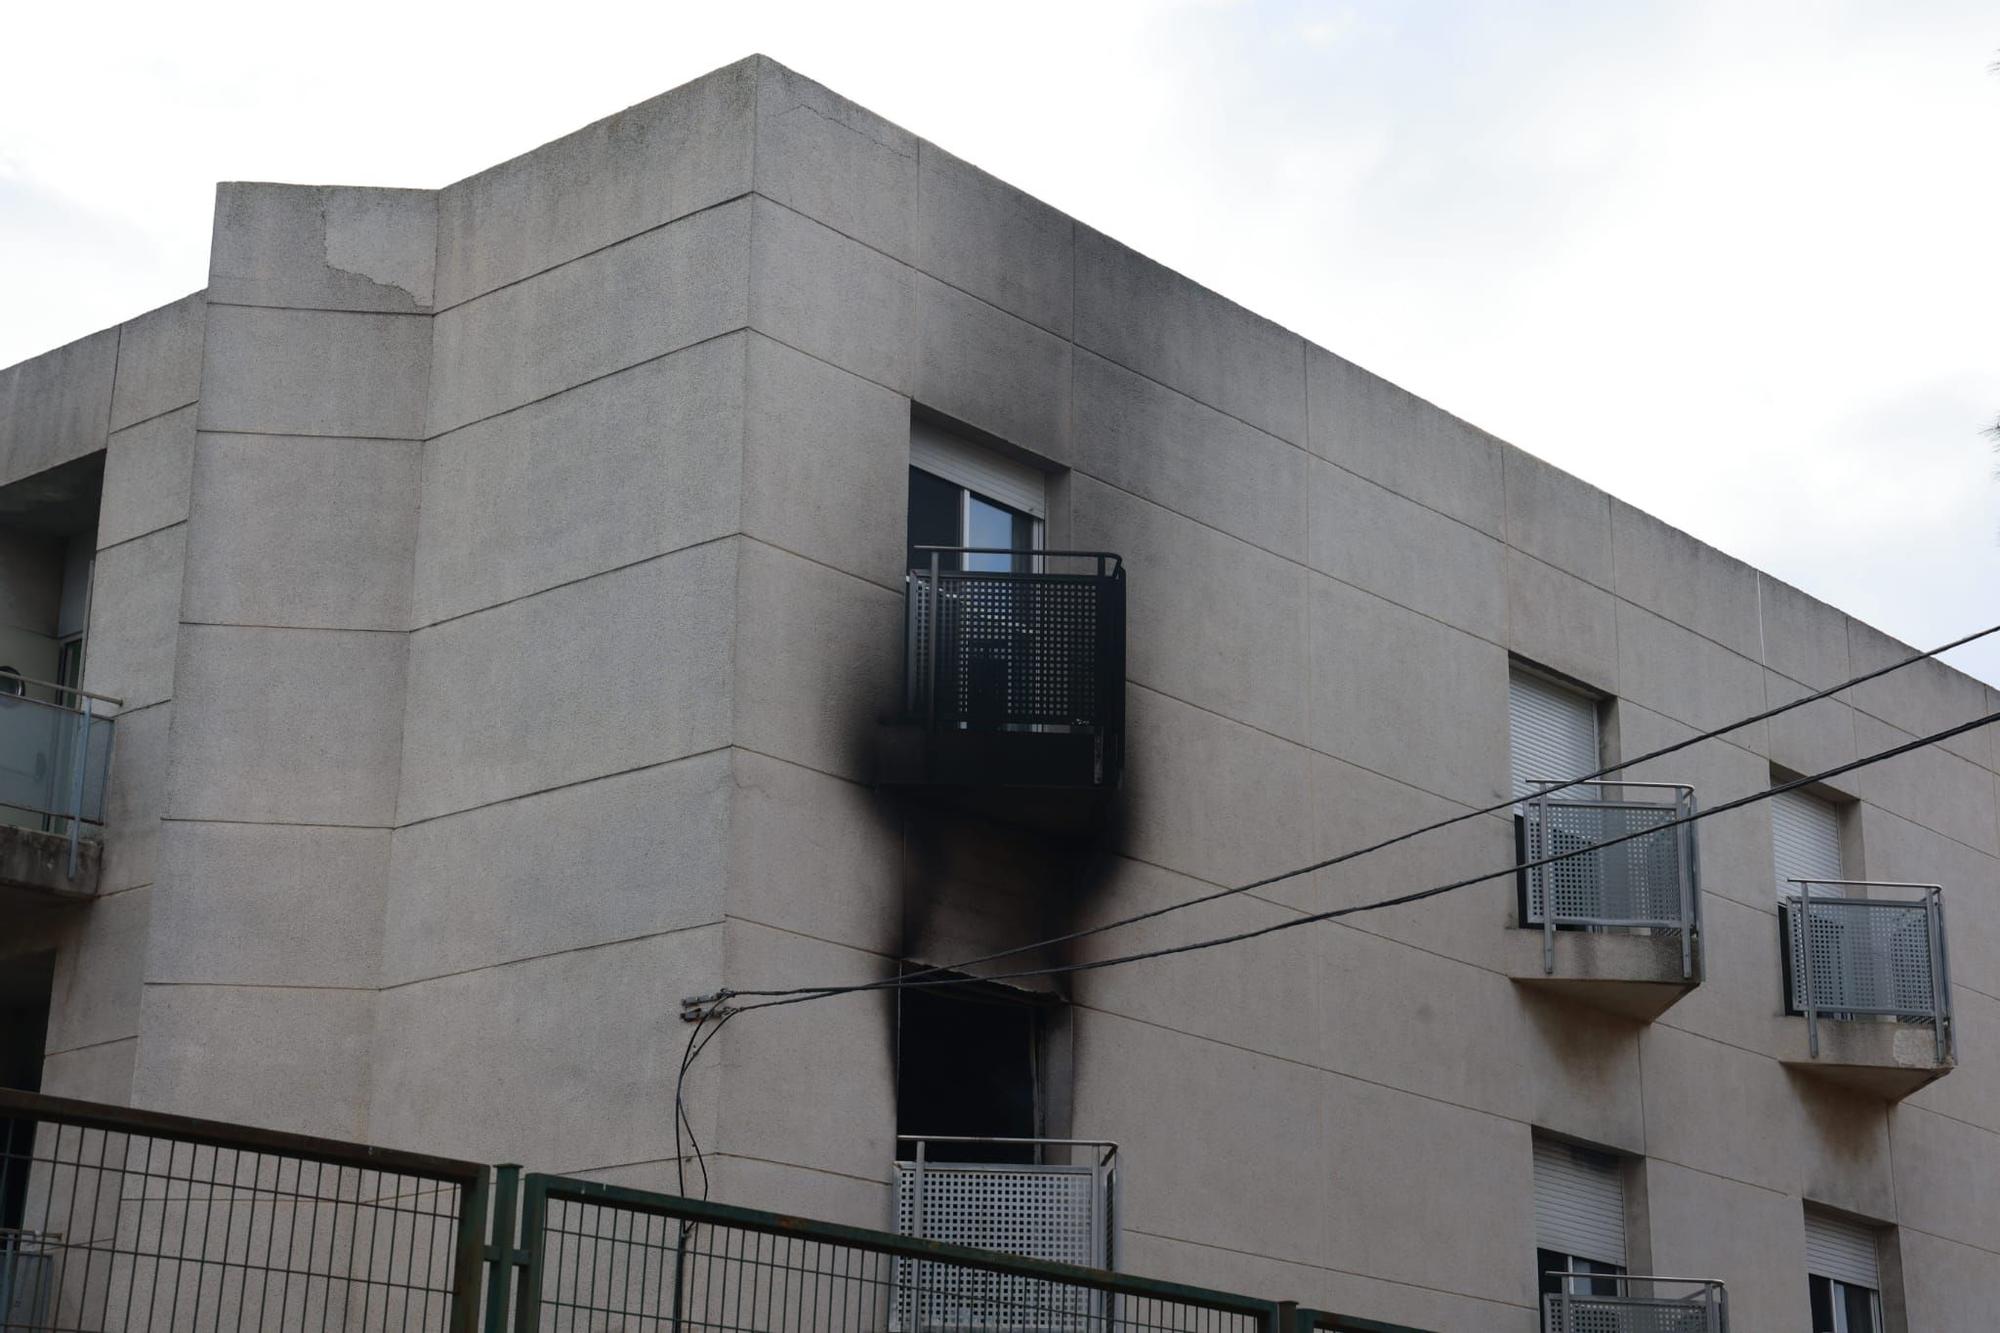 Las huella del incendio de la residencia de Moncada a la luz del día